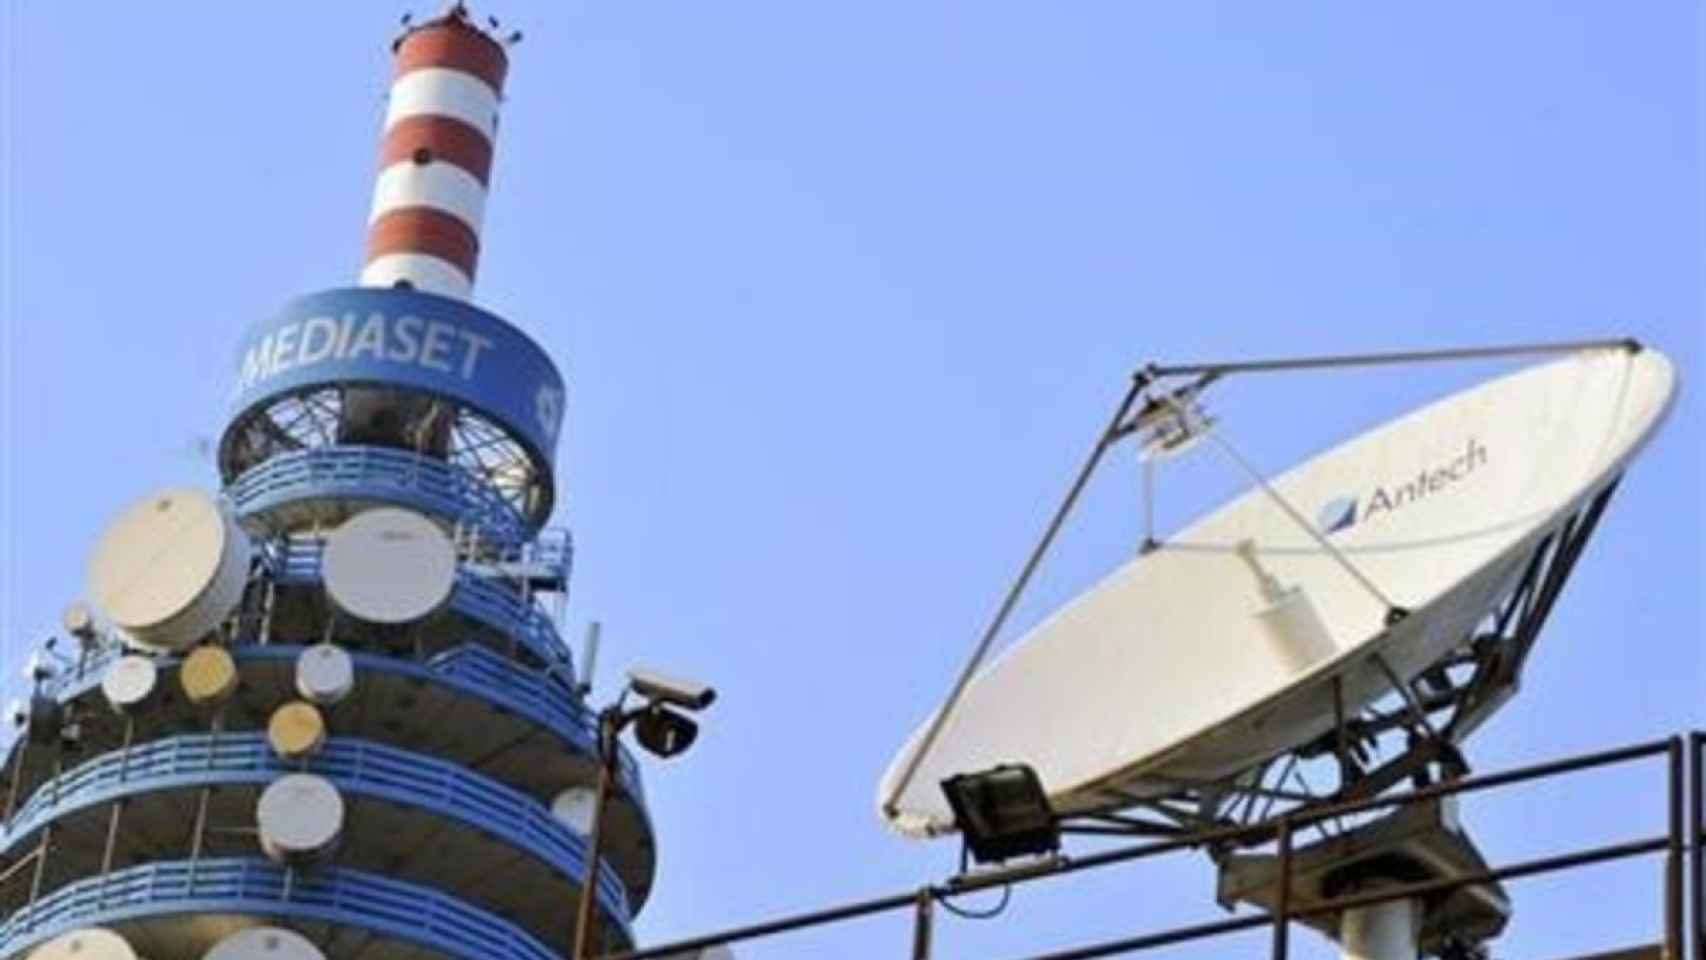 Una antena de emisión en la sede de Mediaset Italia.